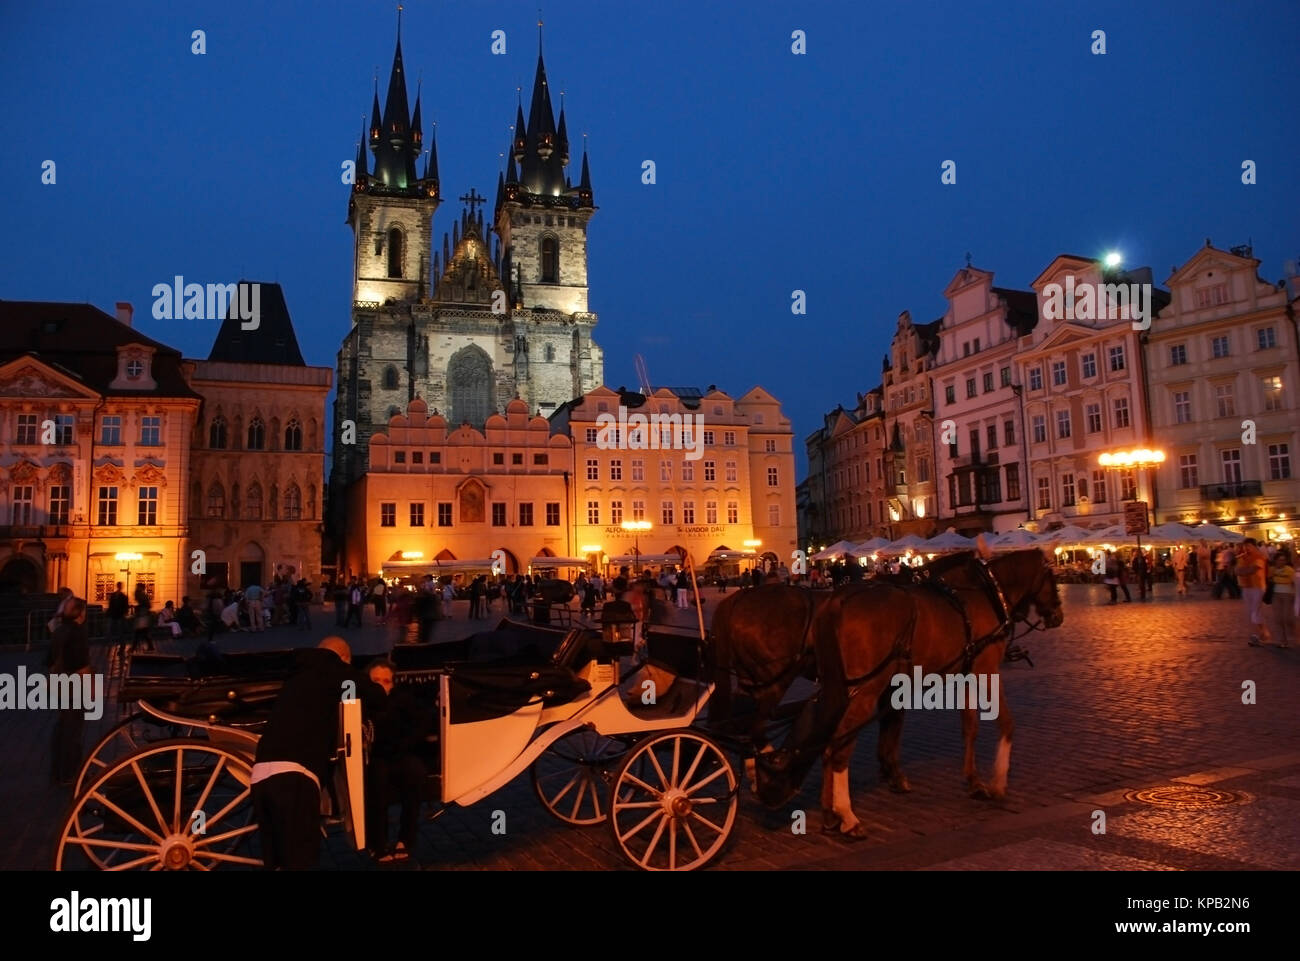 Teynkirche bei Nacht, Prager Altstadt, Tschechien - Teynchurch, Prague, Czech Stock Photo